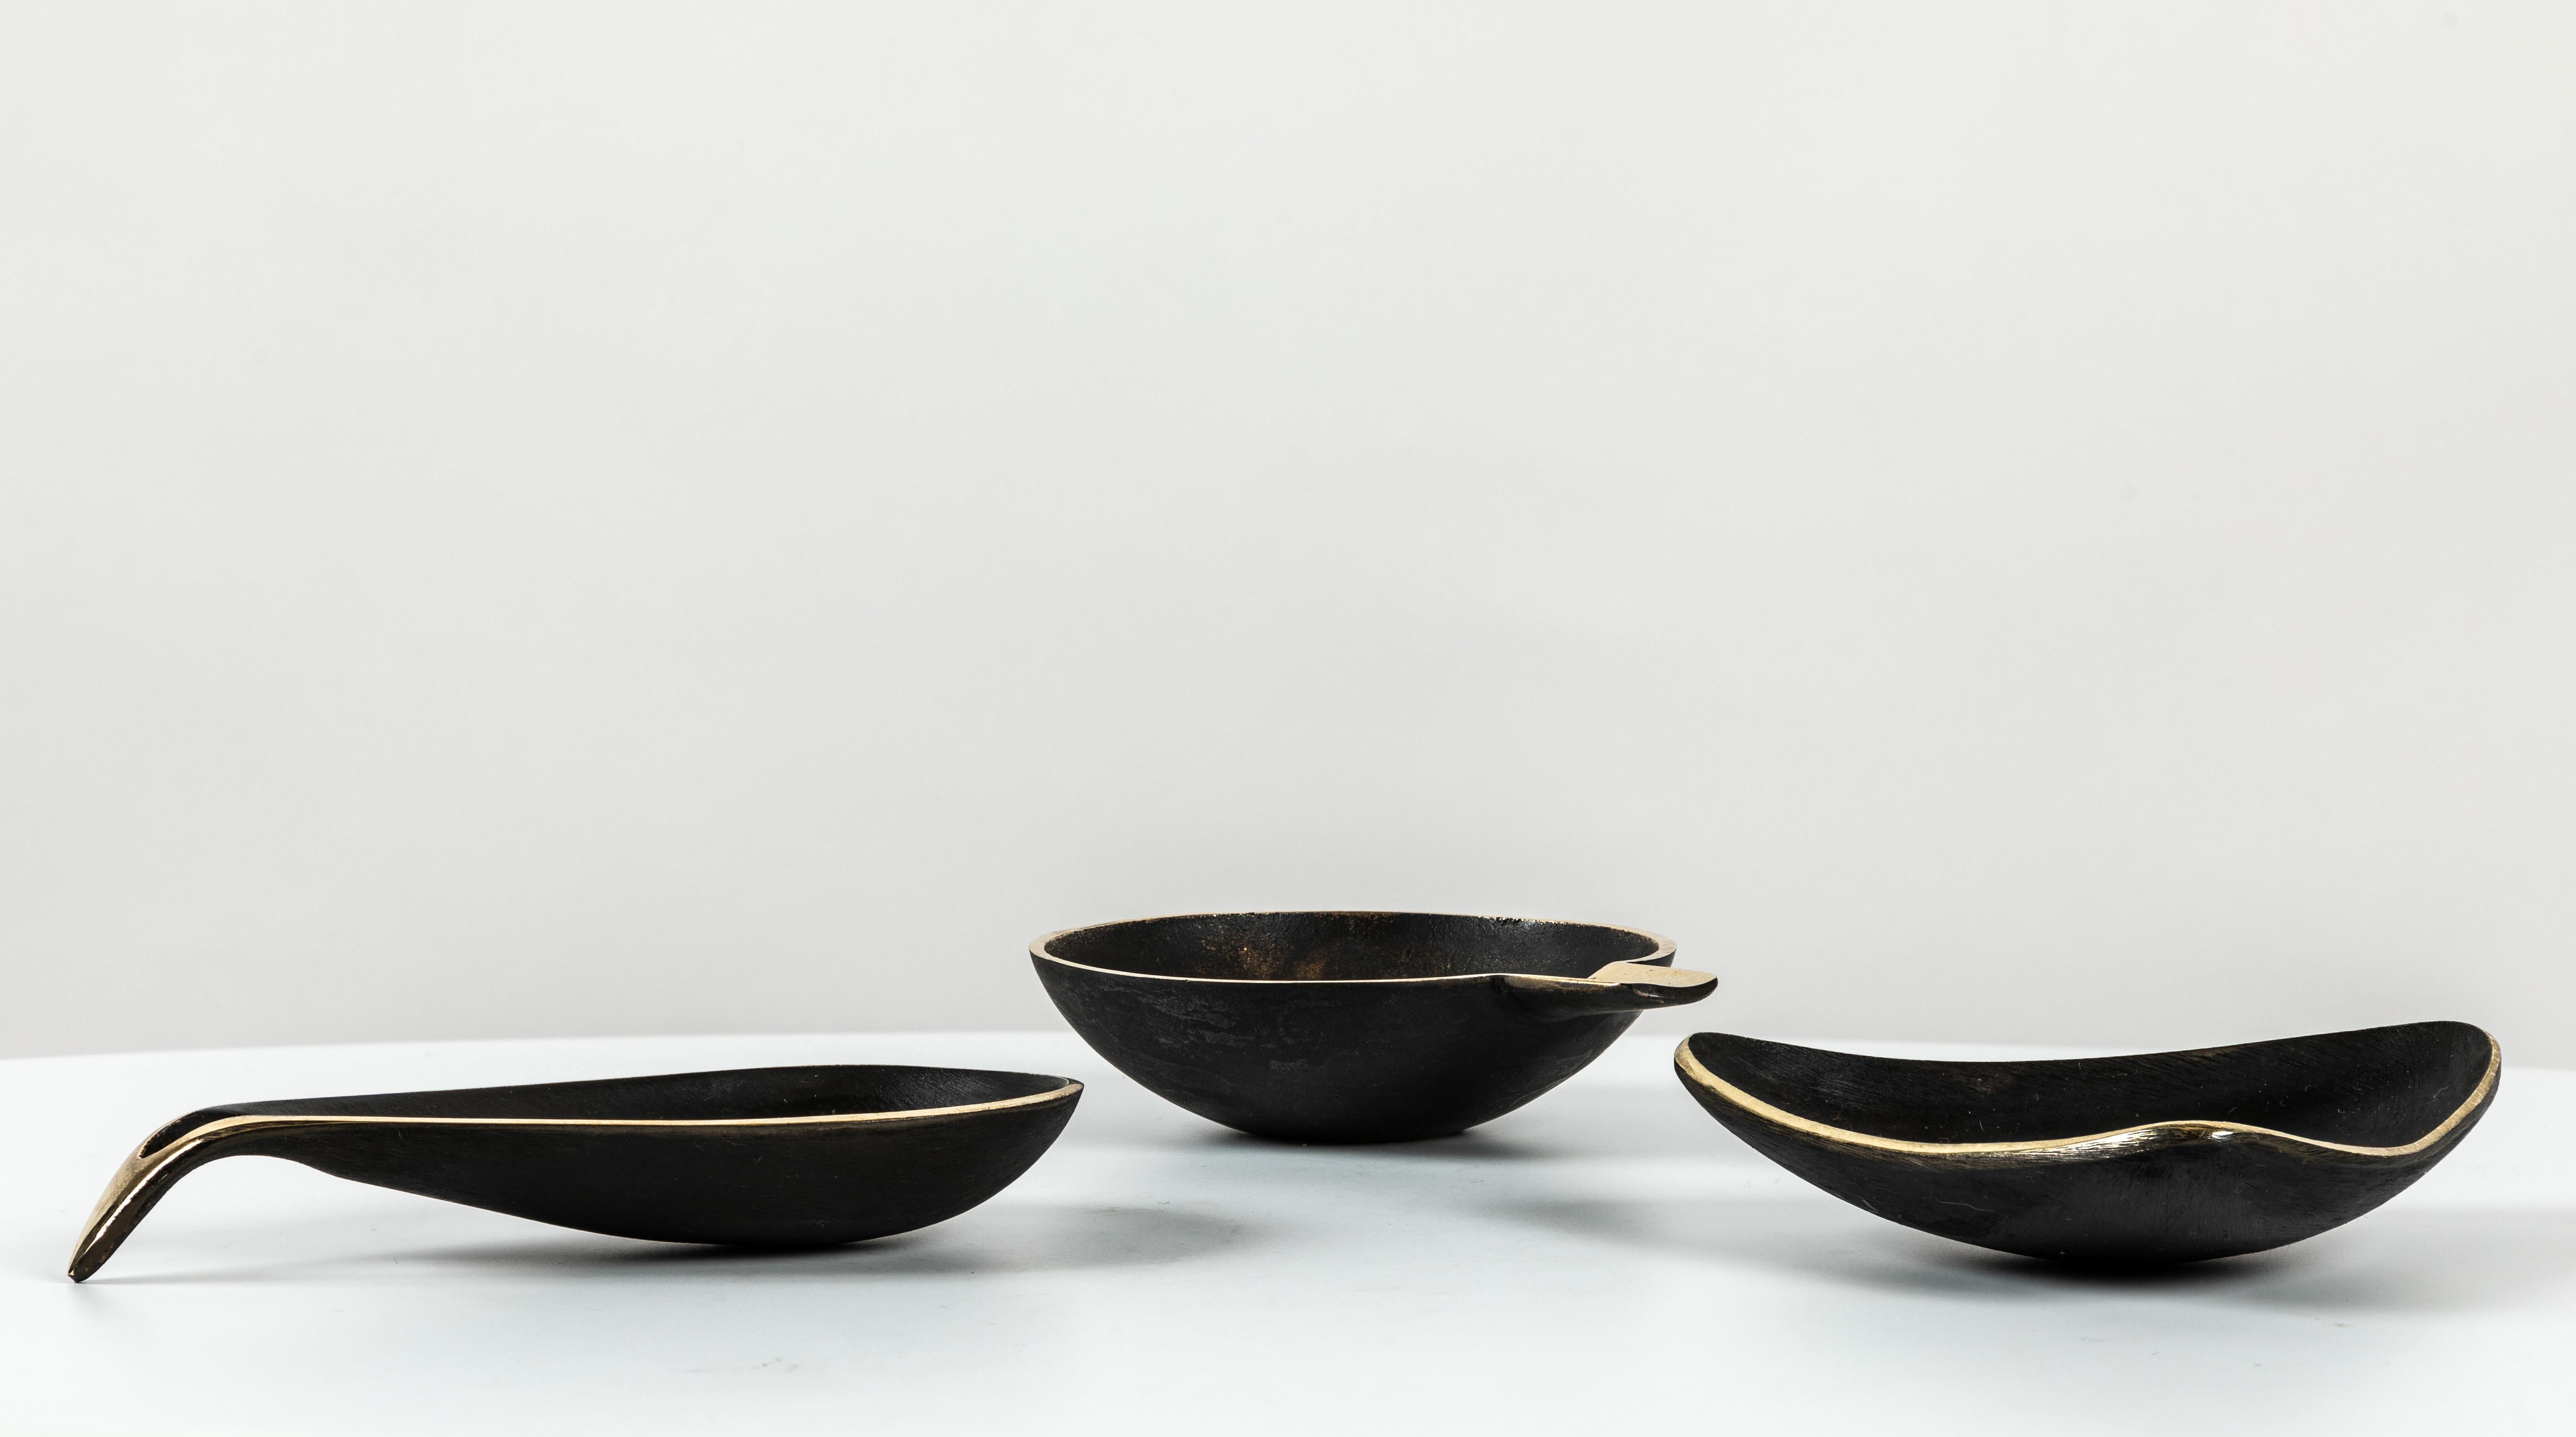 Ensemble de trois bols en laiton Carl Auböck. Comprend un exemplaire de chacun des modèles #3904, #3844 et #4082. Conçus dans les années 1950, ces bols viennois incroyablement raffinés et sculpturaux sont exécutés en laiton poli et sombrement